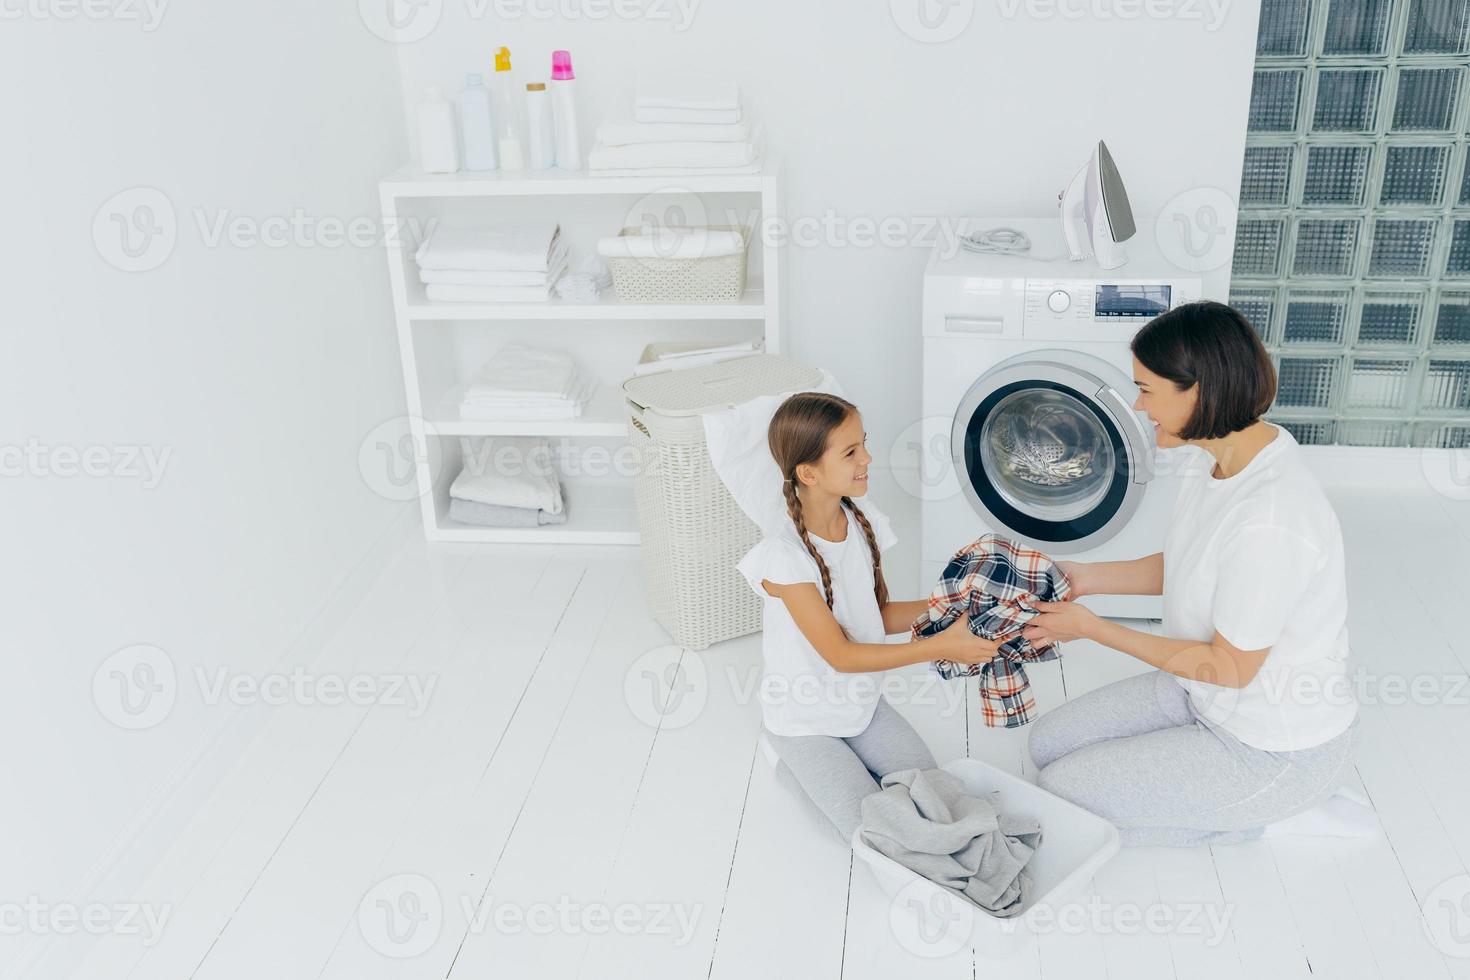 mamma hemmafru och hennes dotter laddar tvättmaskin med smutsiga kläder, poserar i rymlig tvättstuga, gör sysslor hemma, tittar glatt på varandra. tvättdag koncept. familj i tvättstuga foto